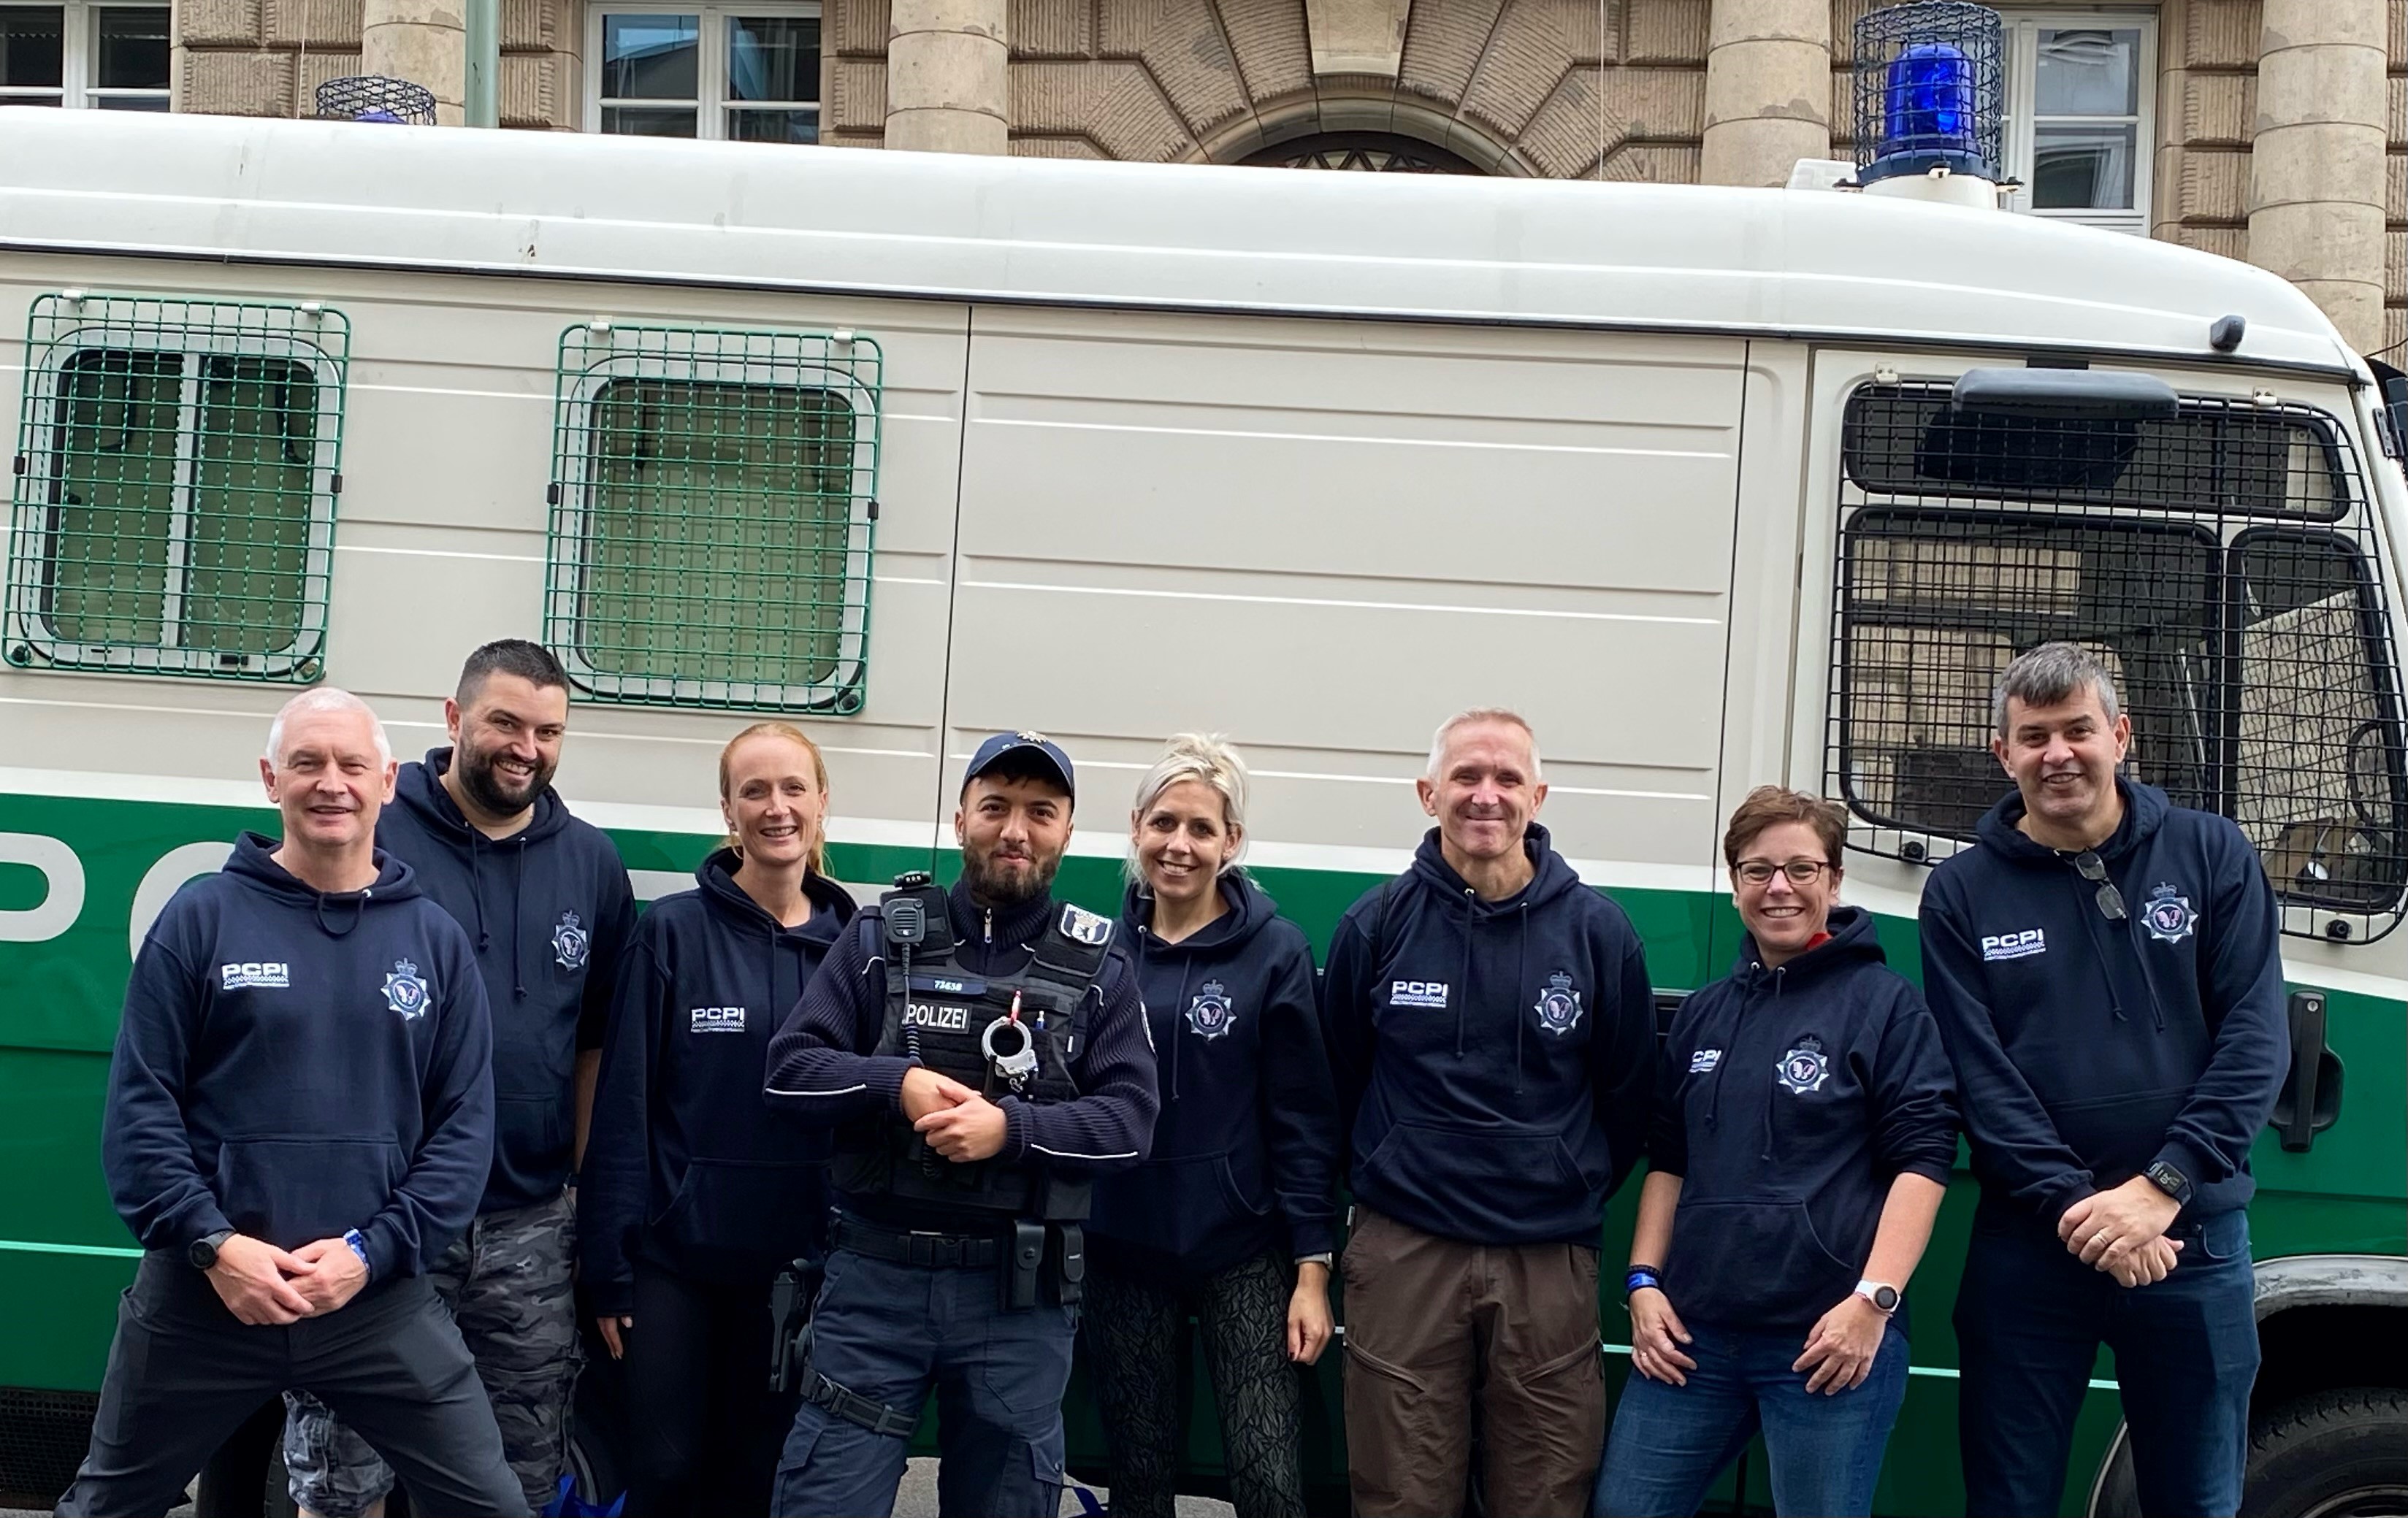 Nicola Hughes Police Team Berlin